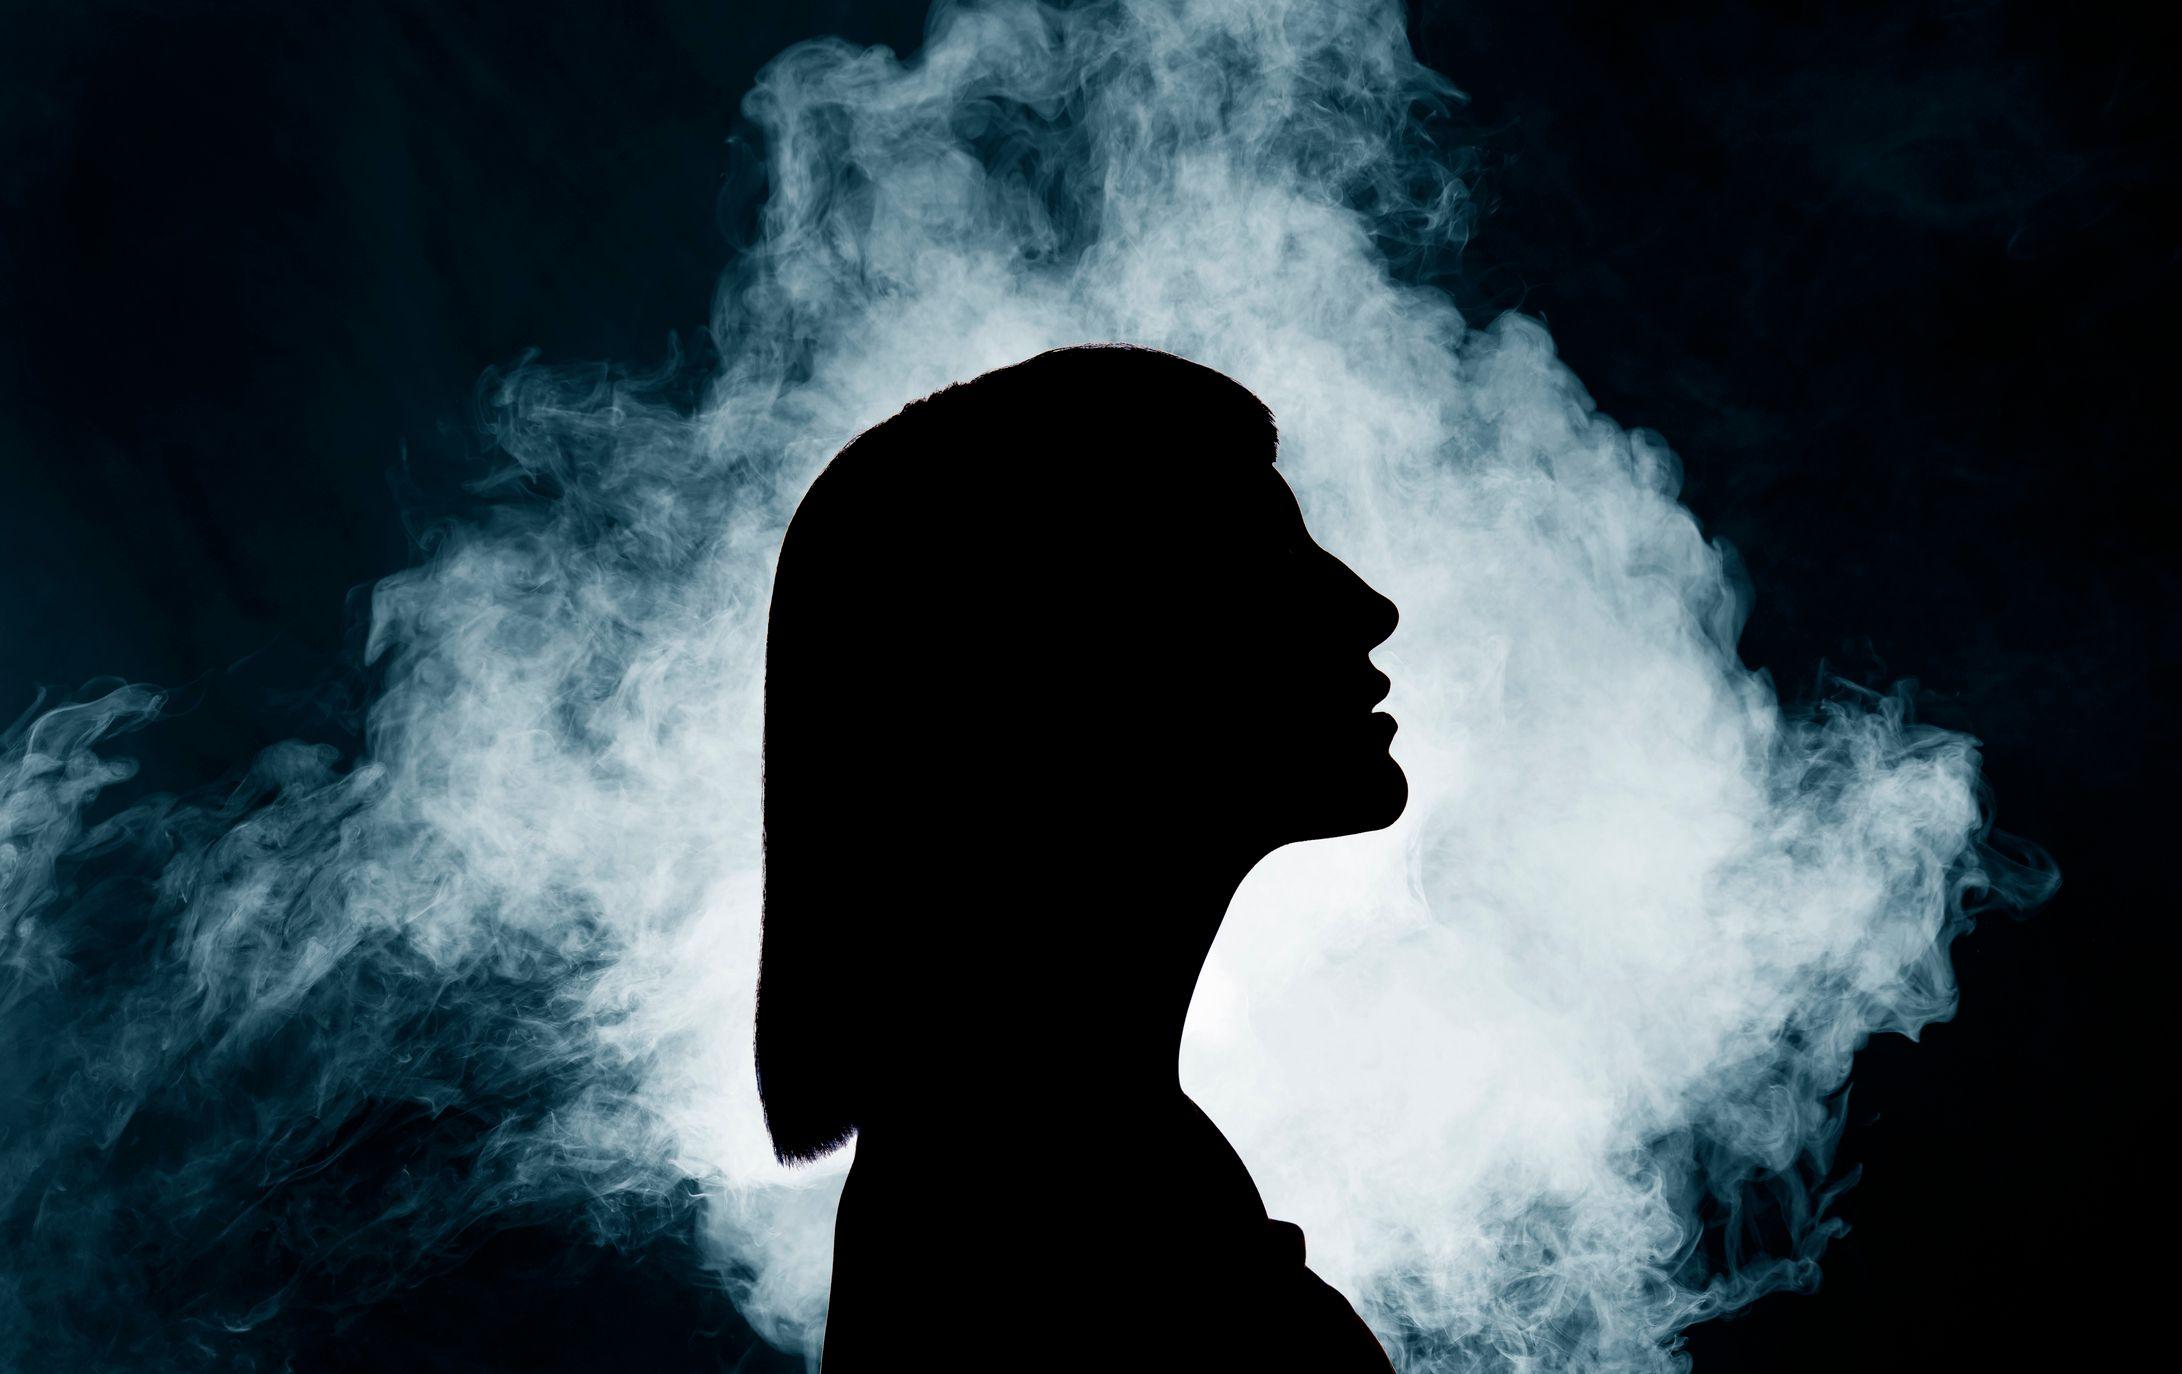 Una silueta de la cabeza de una mujer en medio de una nube de humo iluminada por una luz